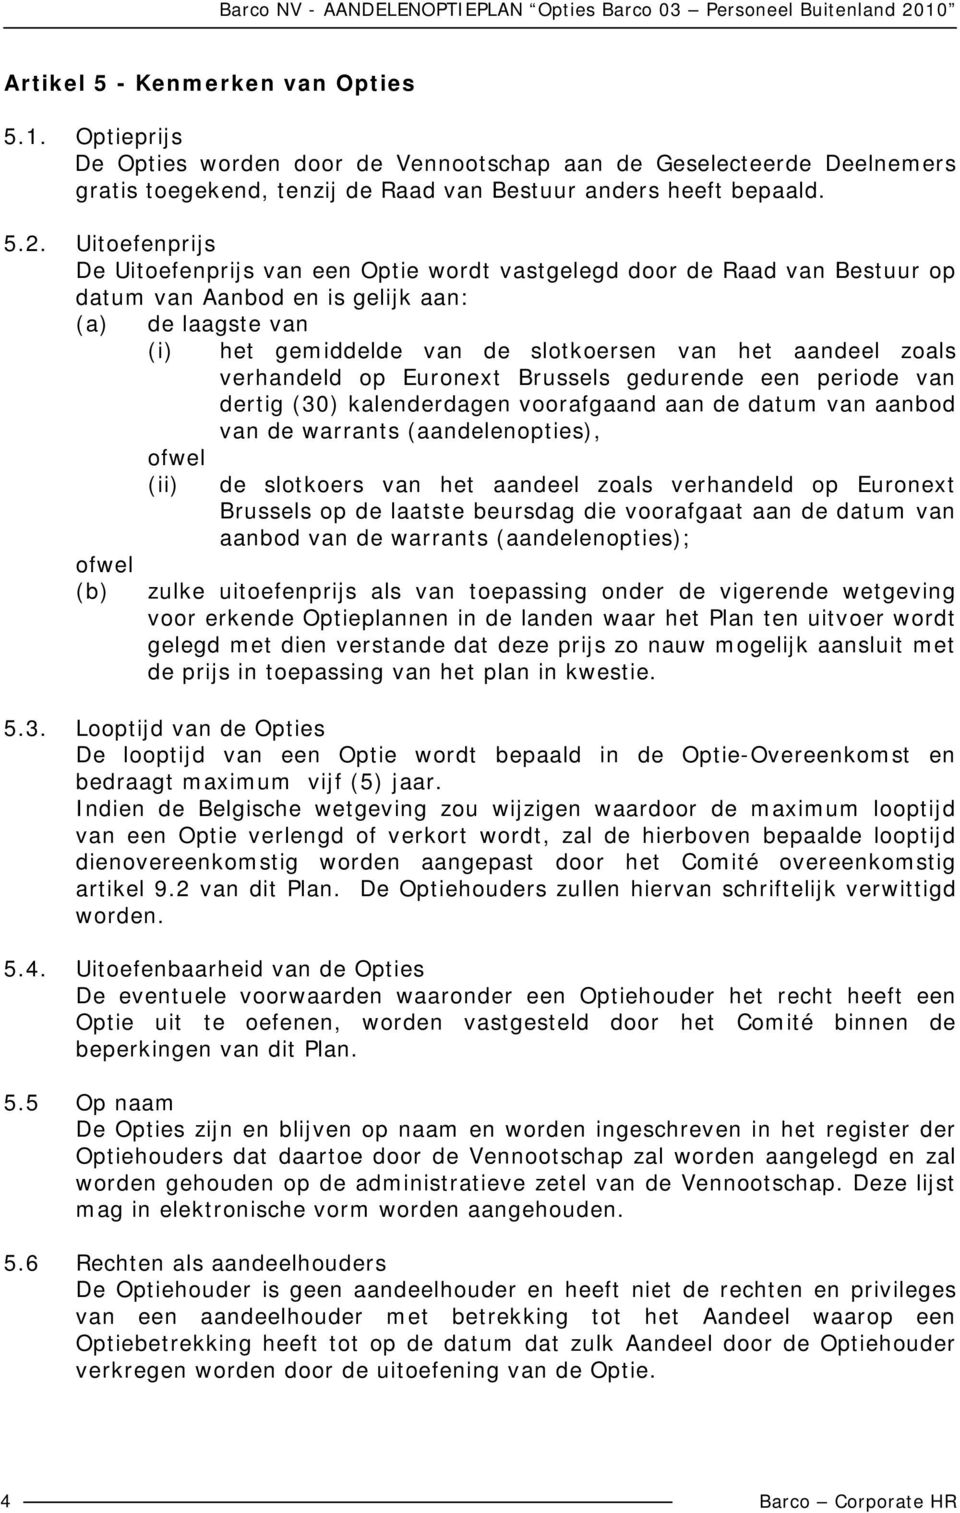 slotkoersen van het aandeel zoals verhandeld op Euronext Brussels gedurende een periode van dertig (30) kalenderdagen voorafgaand aan de datum van aanbod van de warrants (aandelenopties), de